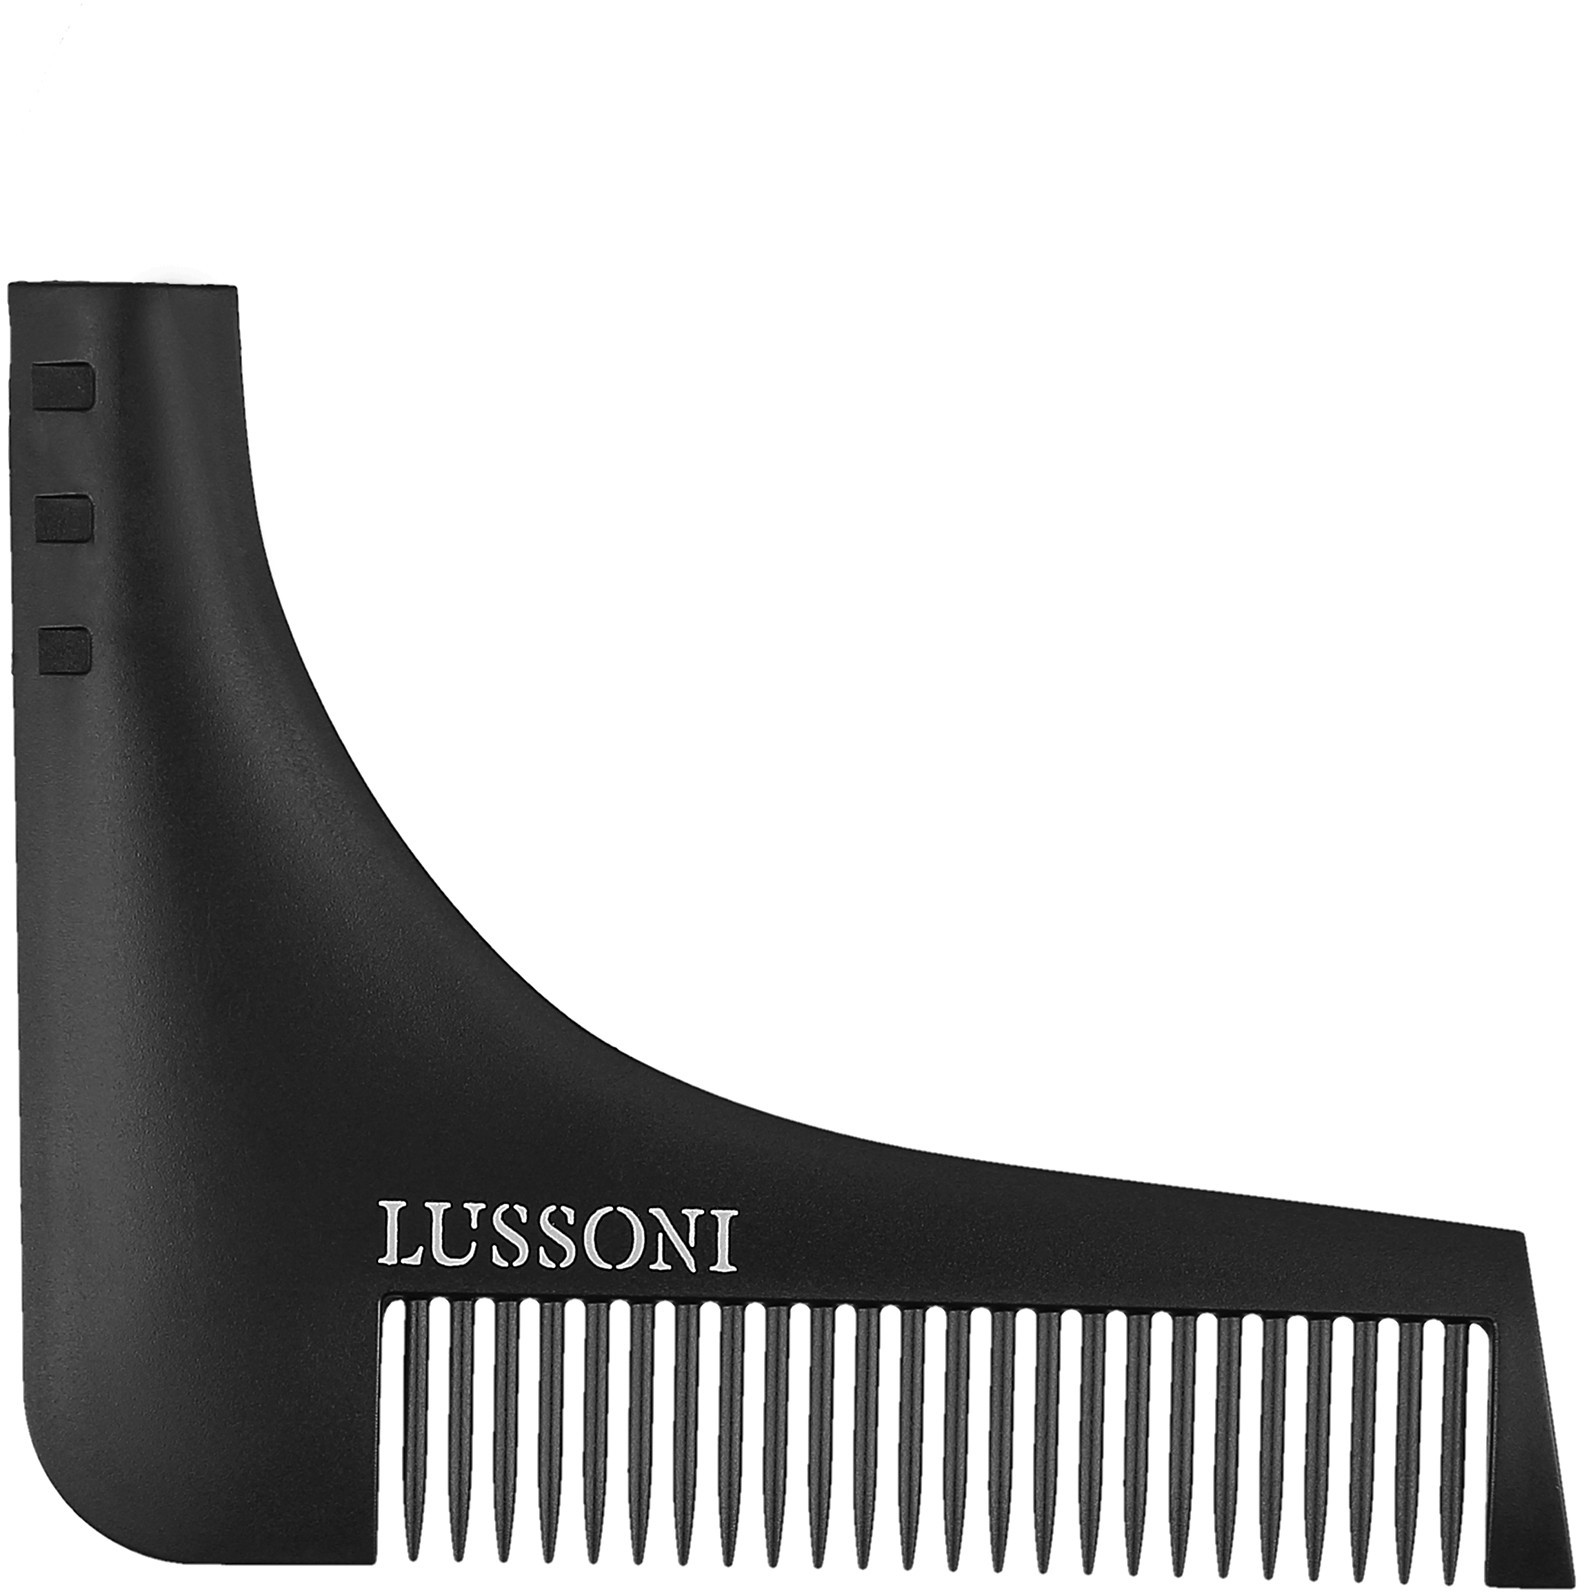 LUSSONI LUSSONI BC 600 Grzebień barberski do stylizacji brody i zarostu 0000065346